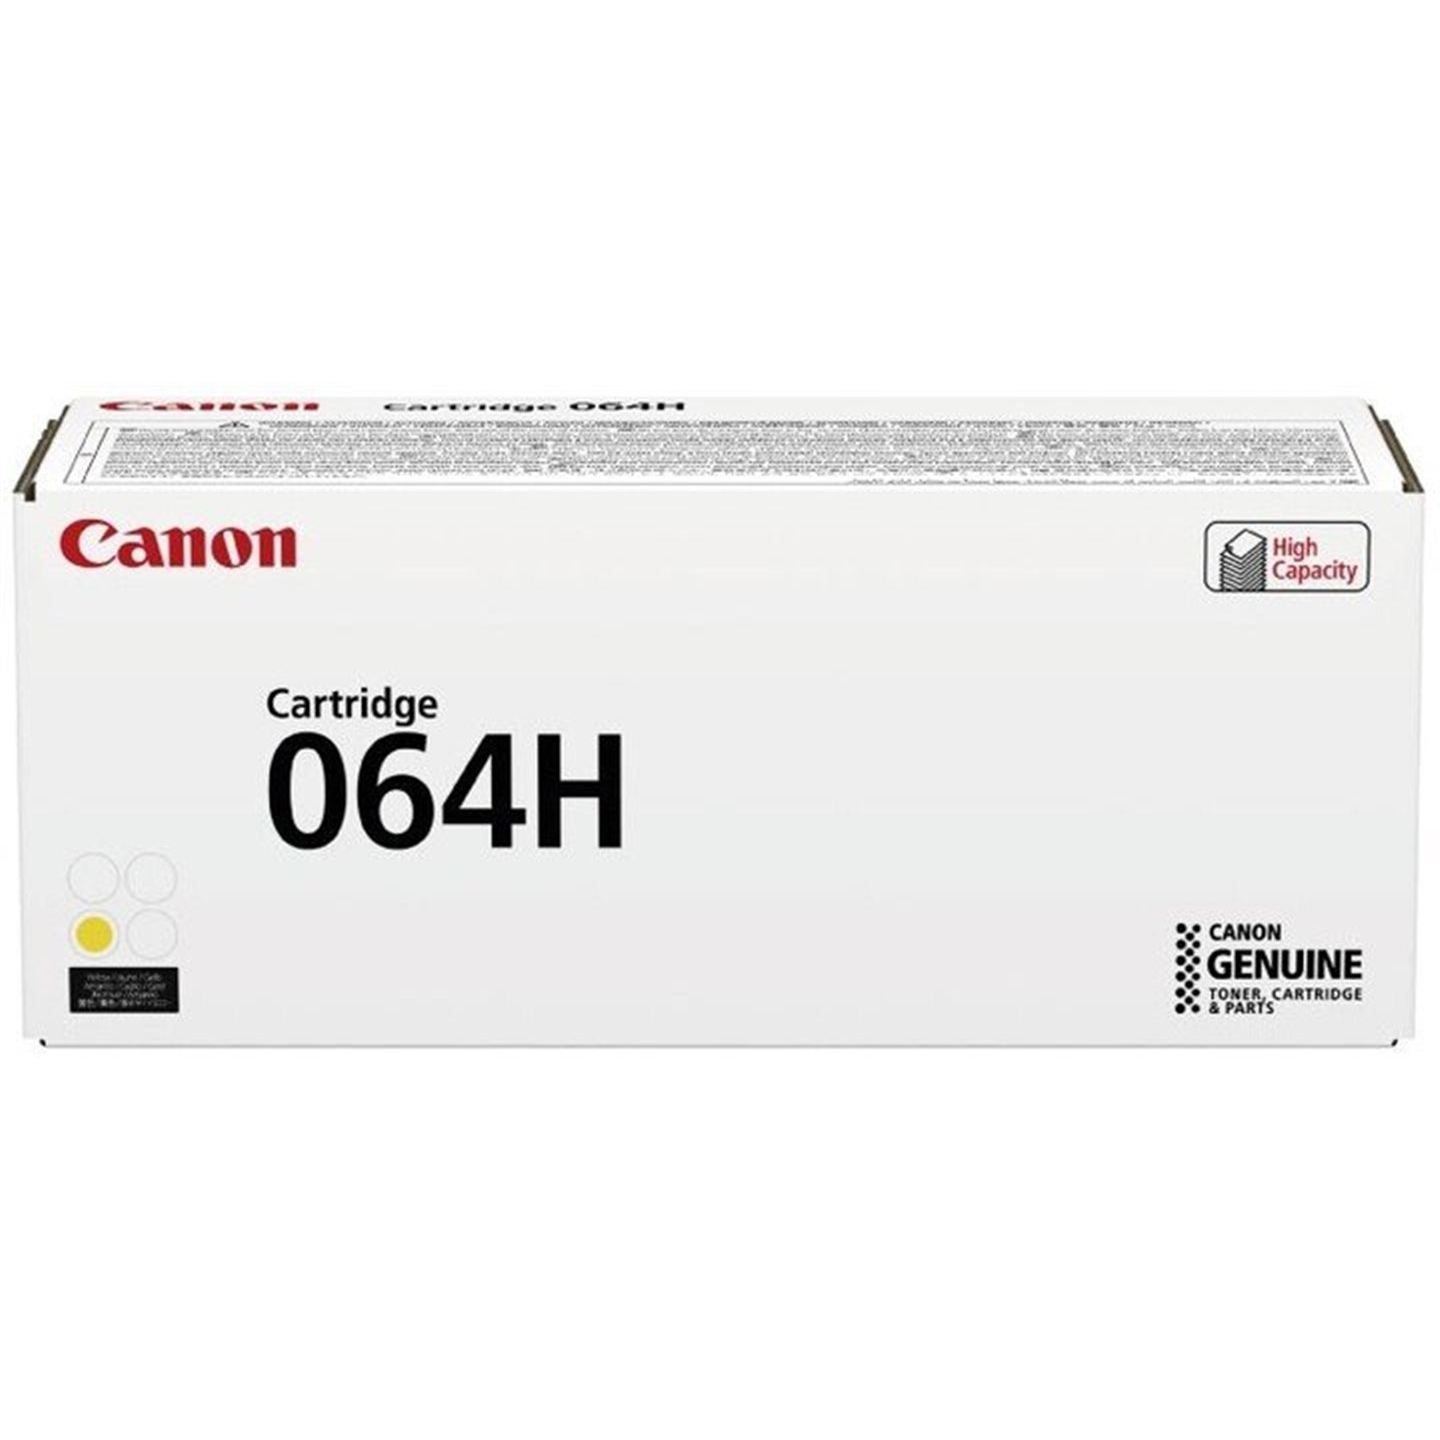 Toner Canon 064HY, i-SENSYS MF832Cdw, yellow, 4932C001, originál